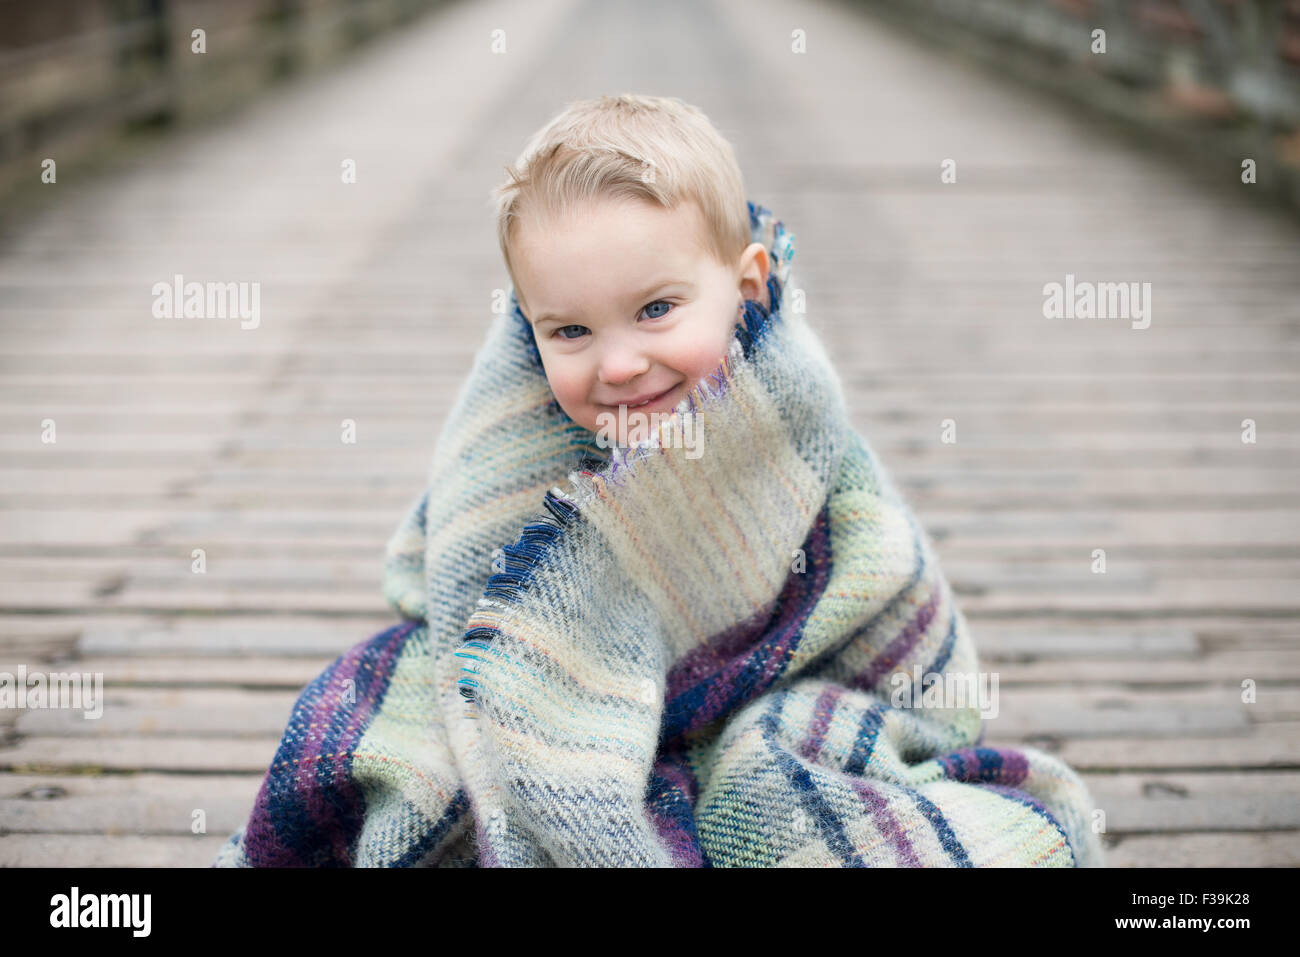 Portrait d'un garçon enveloppé dans une couverture, assis sur un pont en bois Banque D'Images